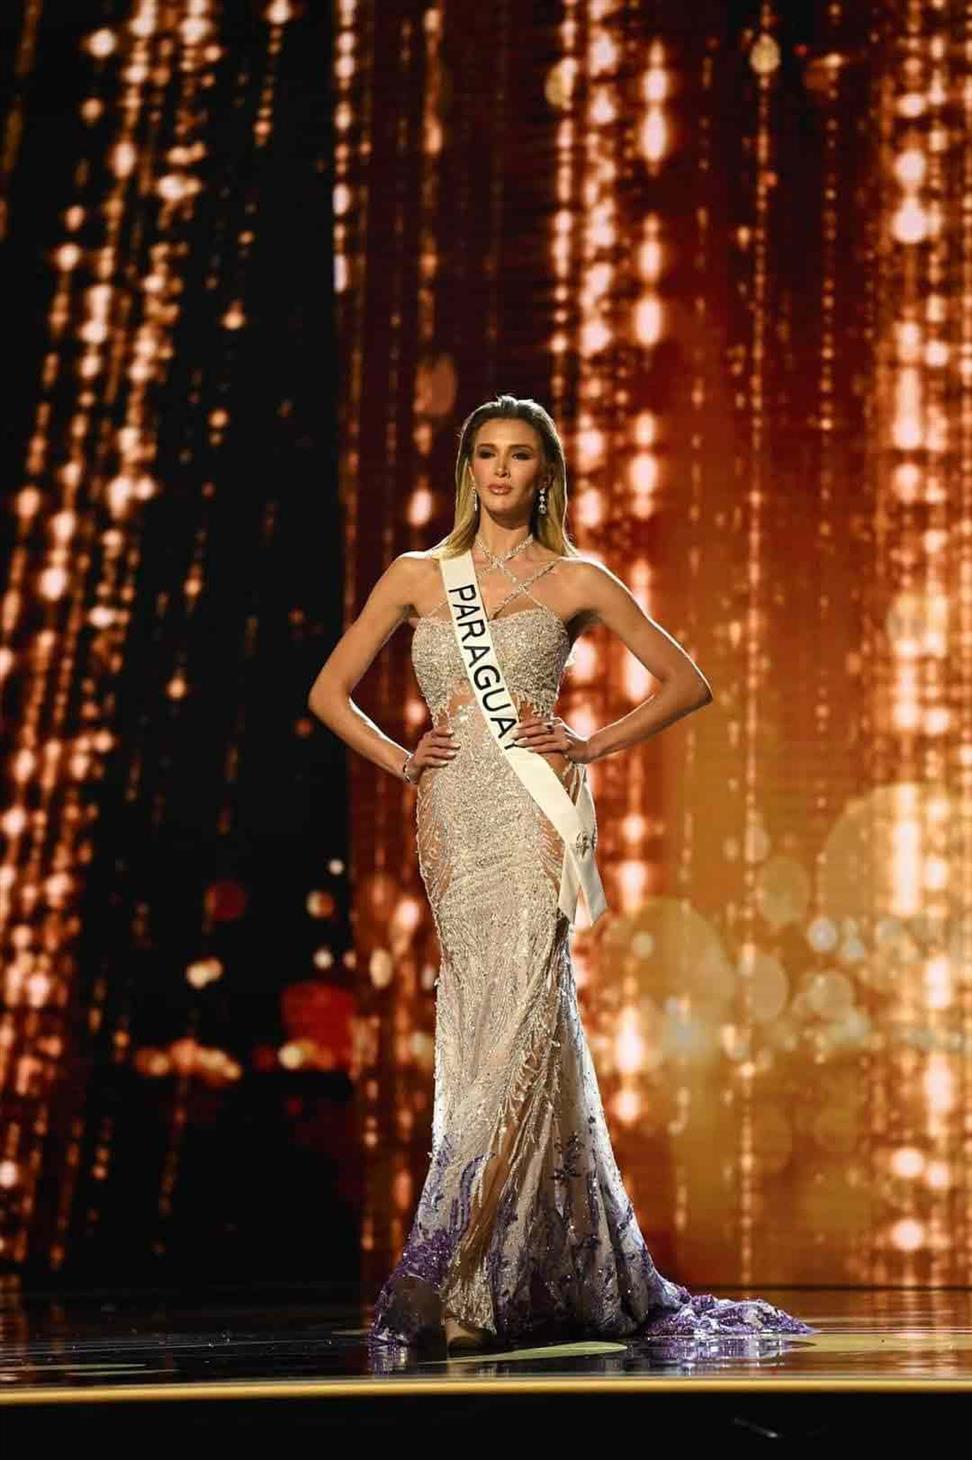 Leah Ashmore representing Paraguay